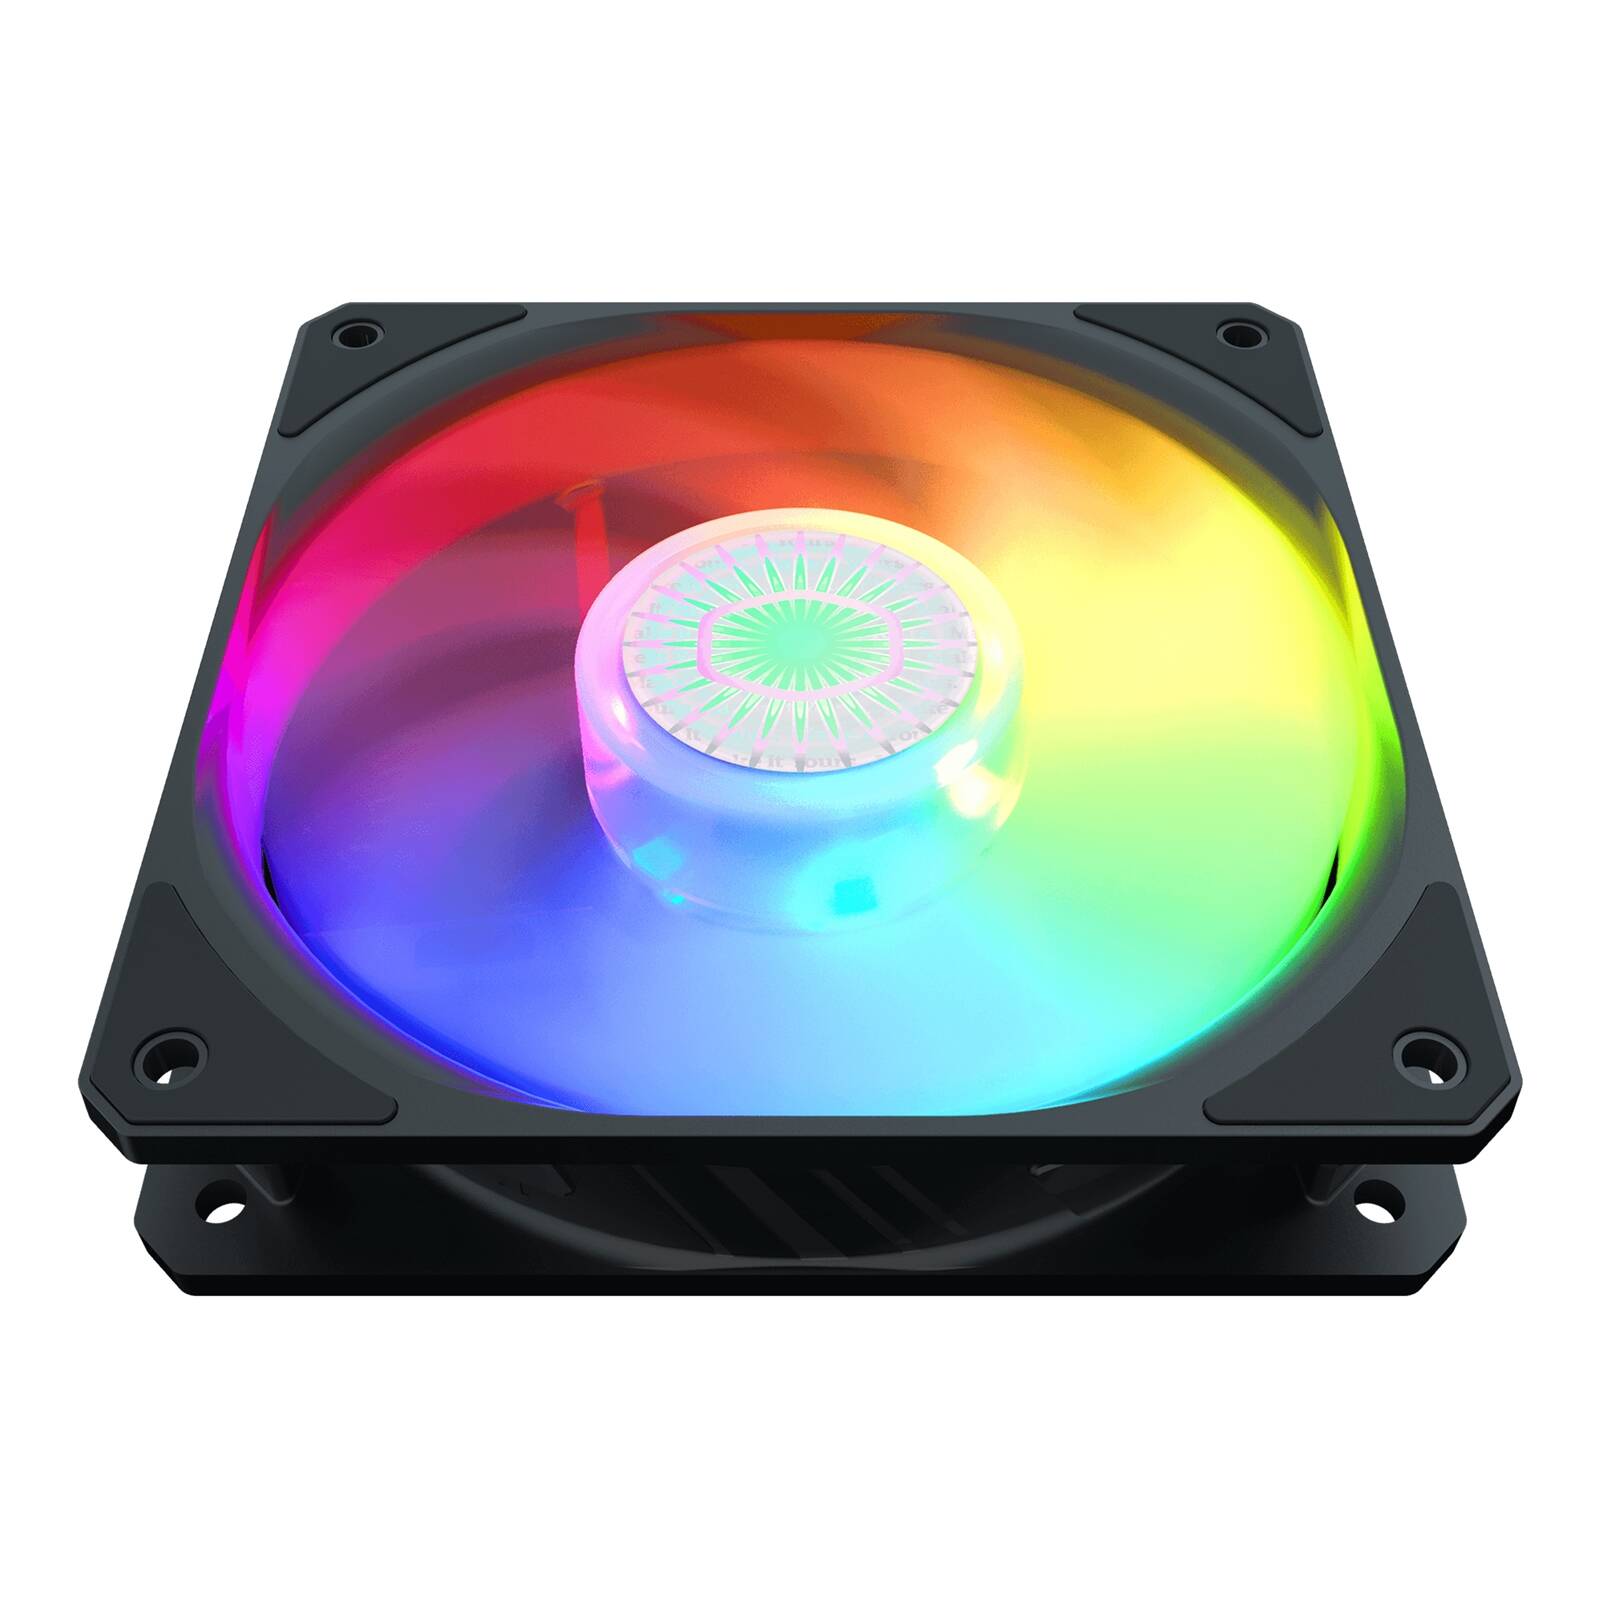 Cooler Master SickleFlow 120 ARGB 120mm 1800RPM PWM PWM Addressable RGB LED Fan